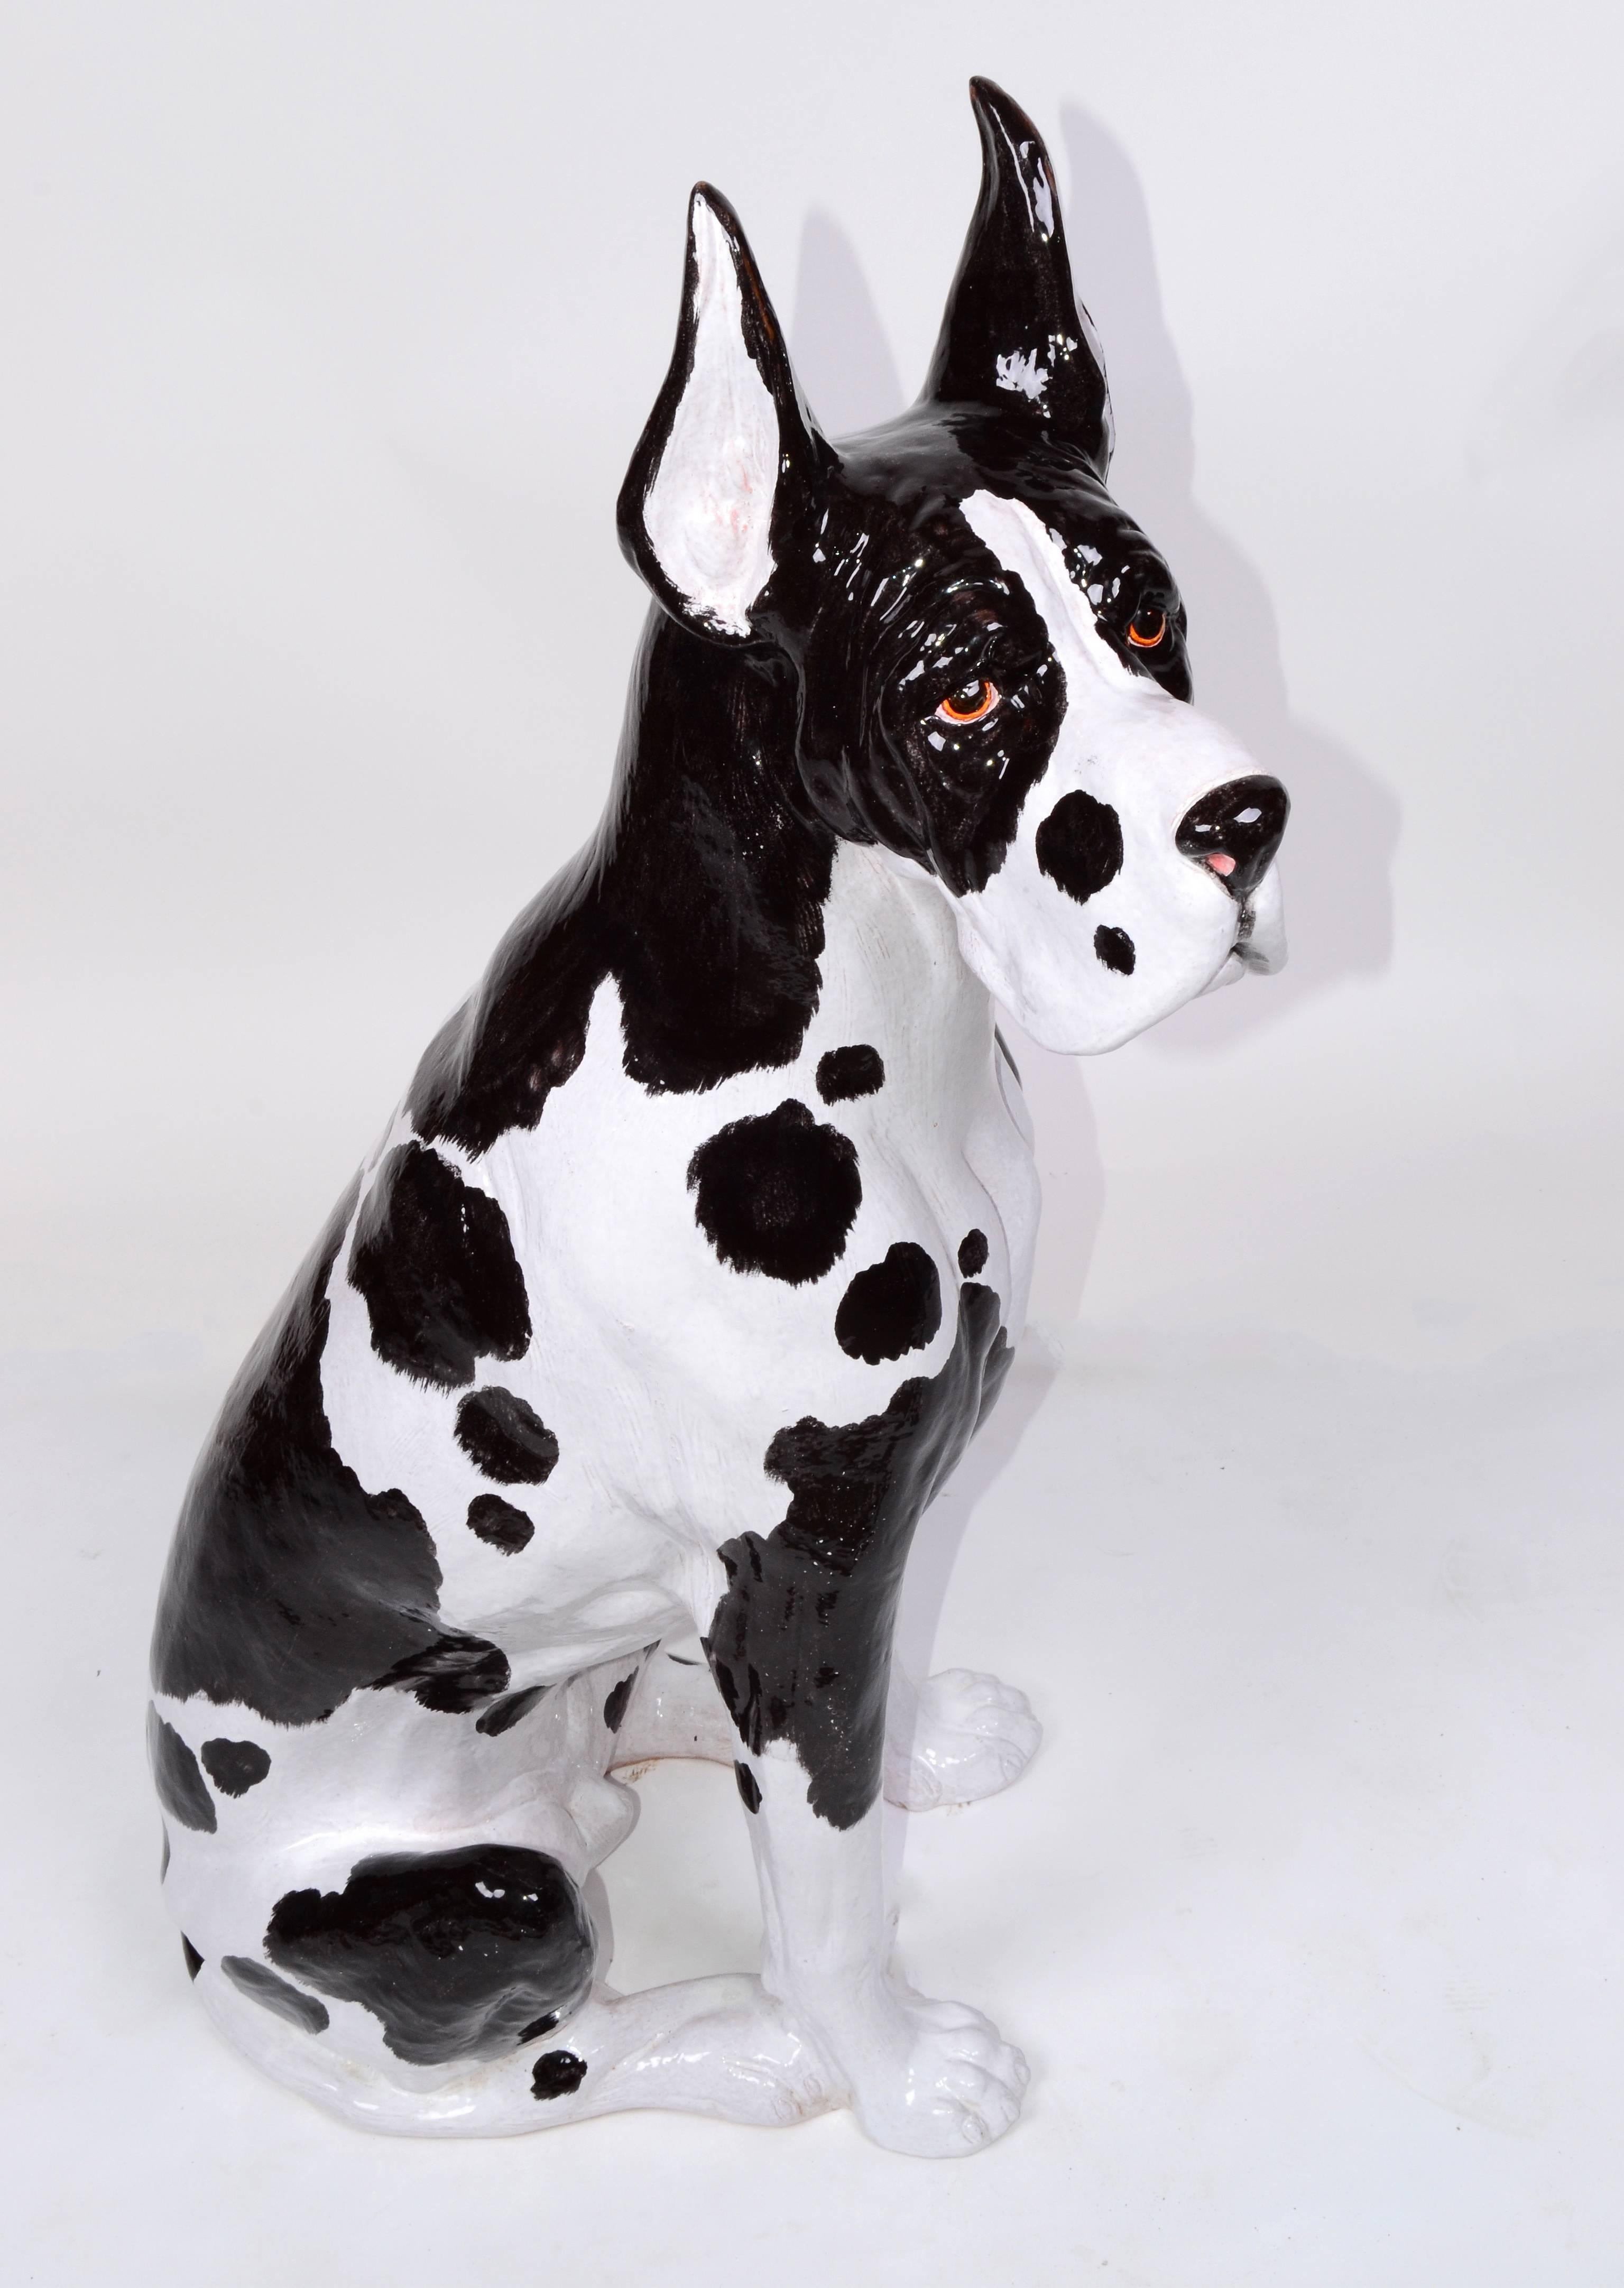 Stunning glazed Italian ceramic lifesize Great Dane dog statue. Signed underneath 